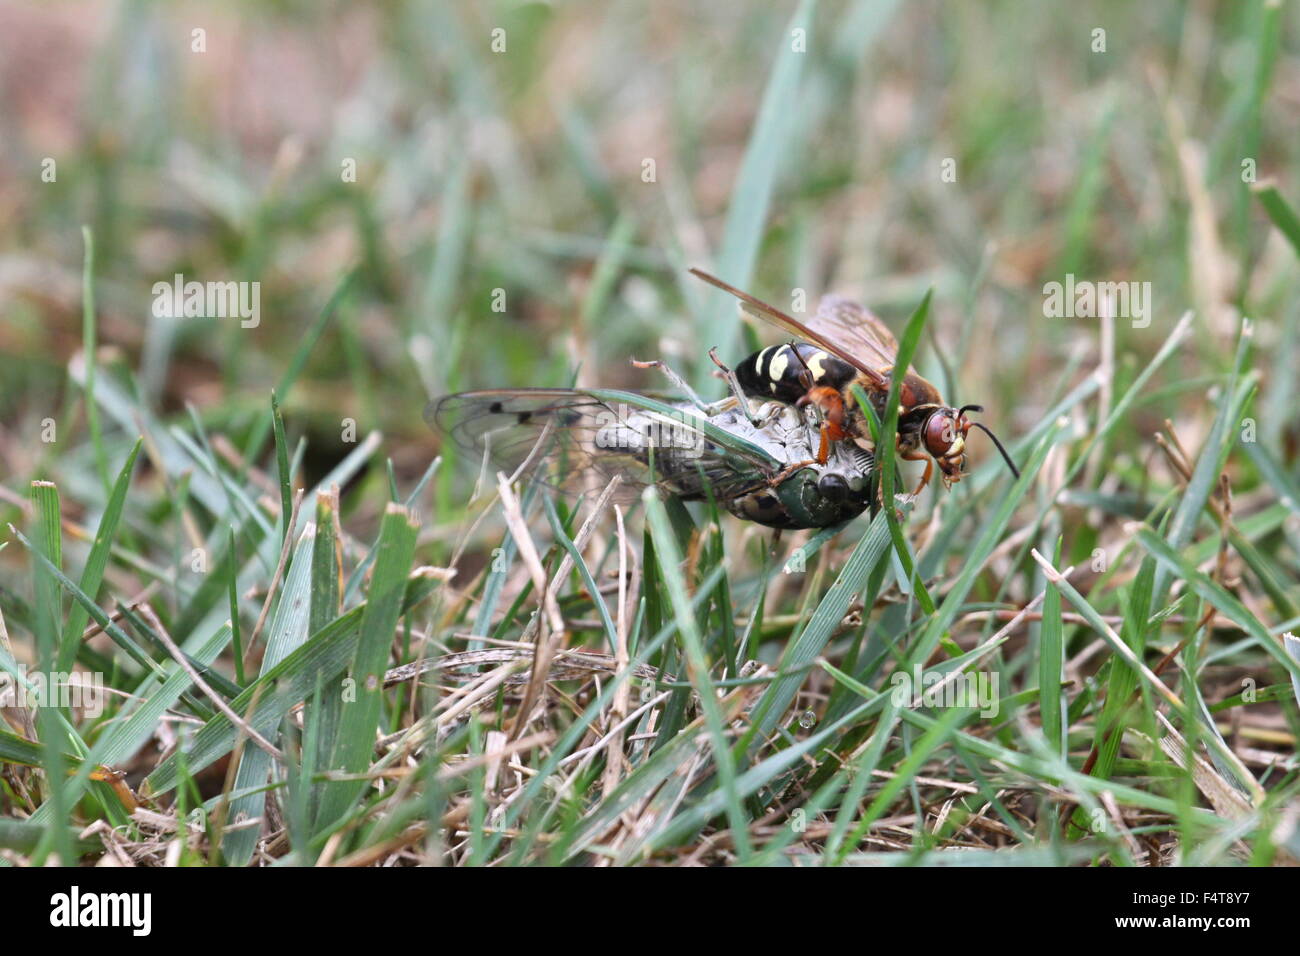 Le glissement d'un tueur de cigale cicada paralysés. Banque D'Images